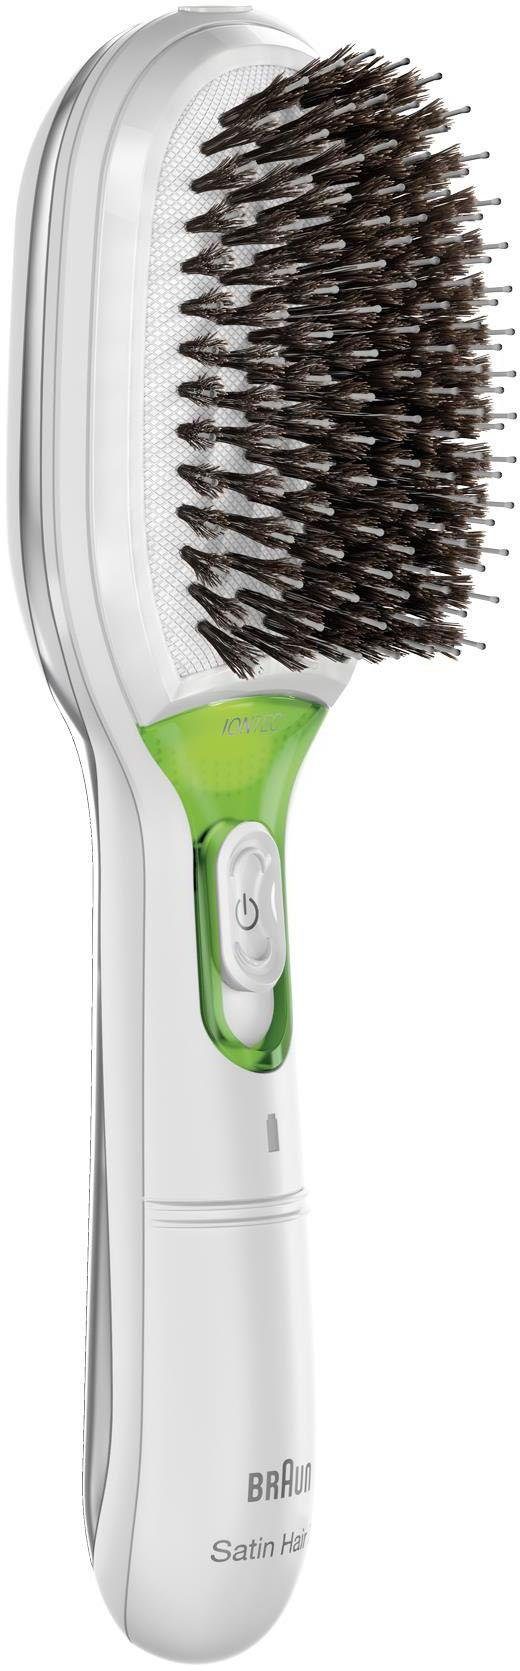 Haarglättbürste natürliche BR750, IONTEC Glanz-Förderung Borsten, Hair Braun Ionen-Technologie zur Satin 7